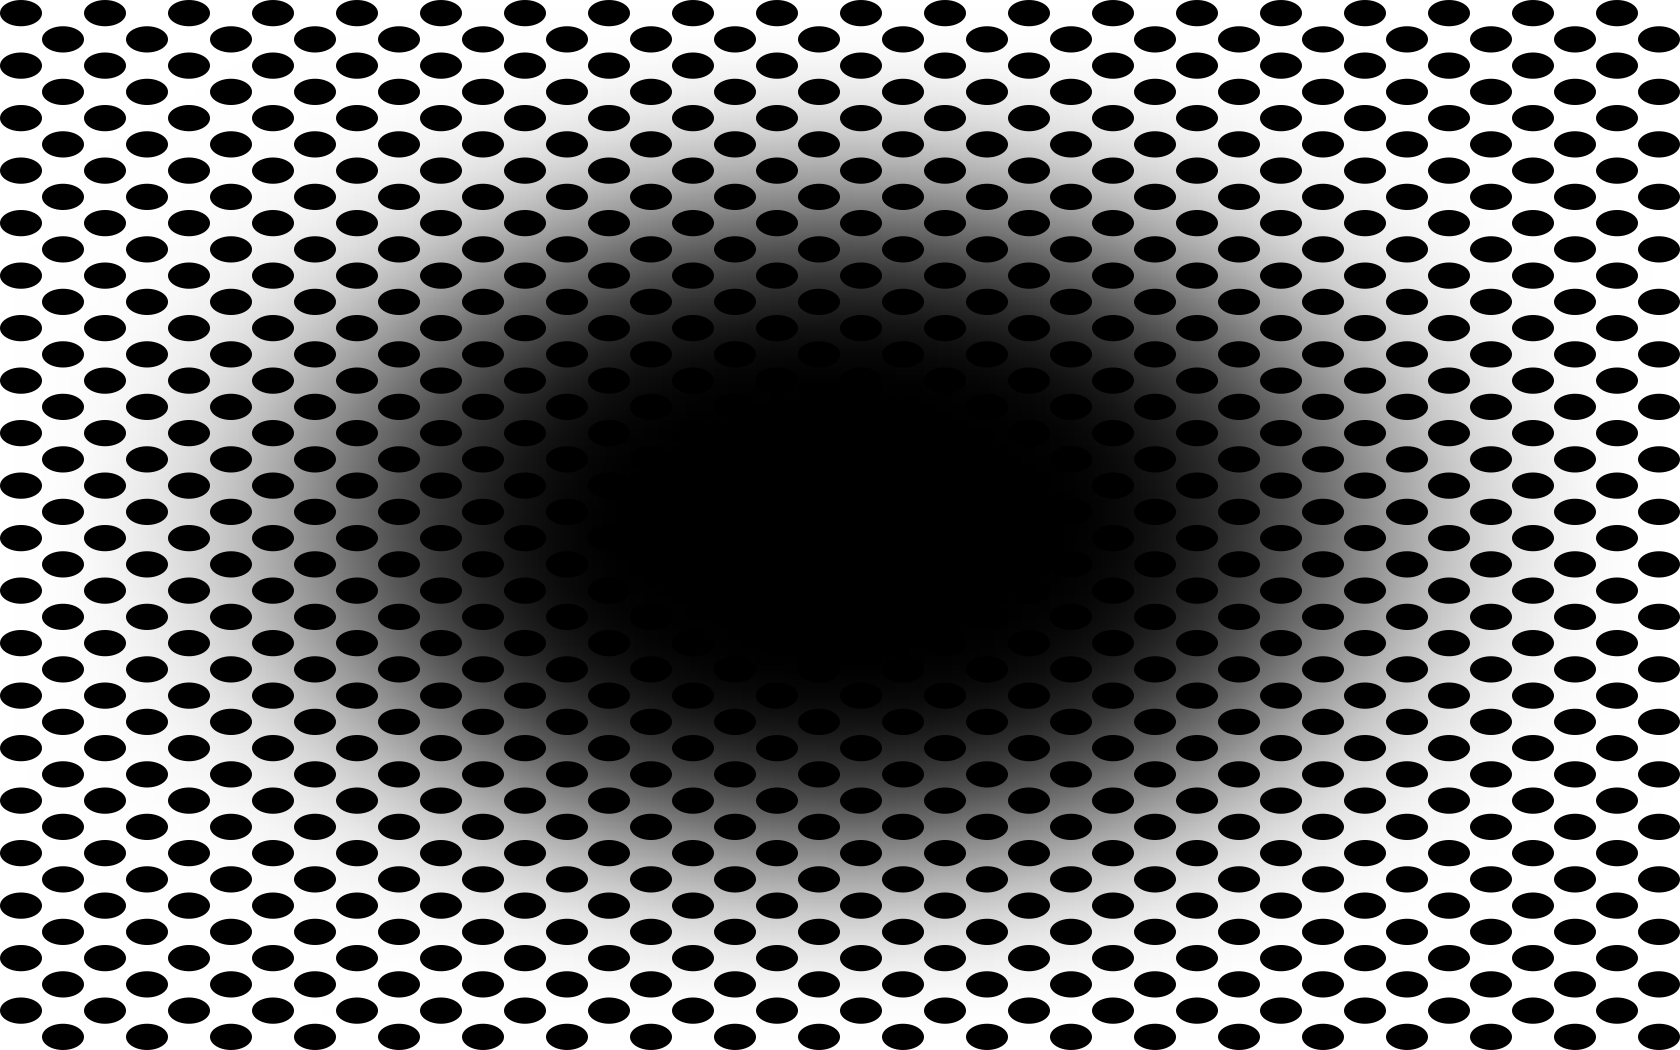 The black hole optical illusion